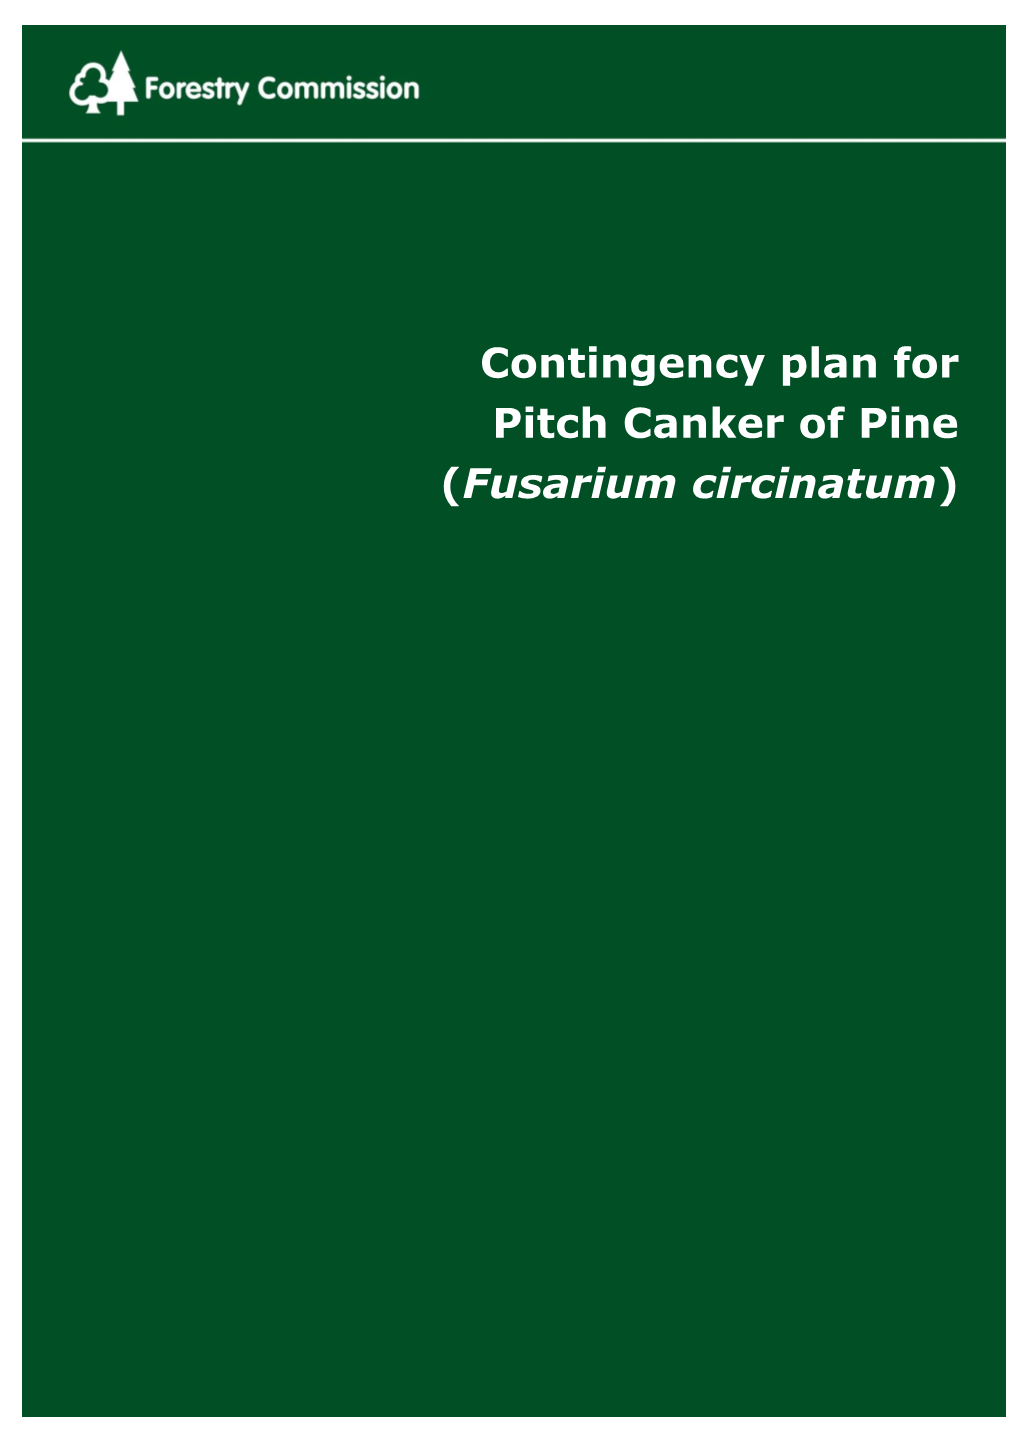 Contingency Plan for Pitch Canker of Pine (Fusarium Circinatum)